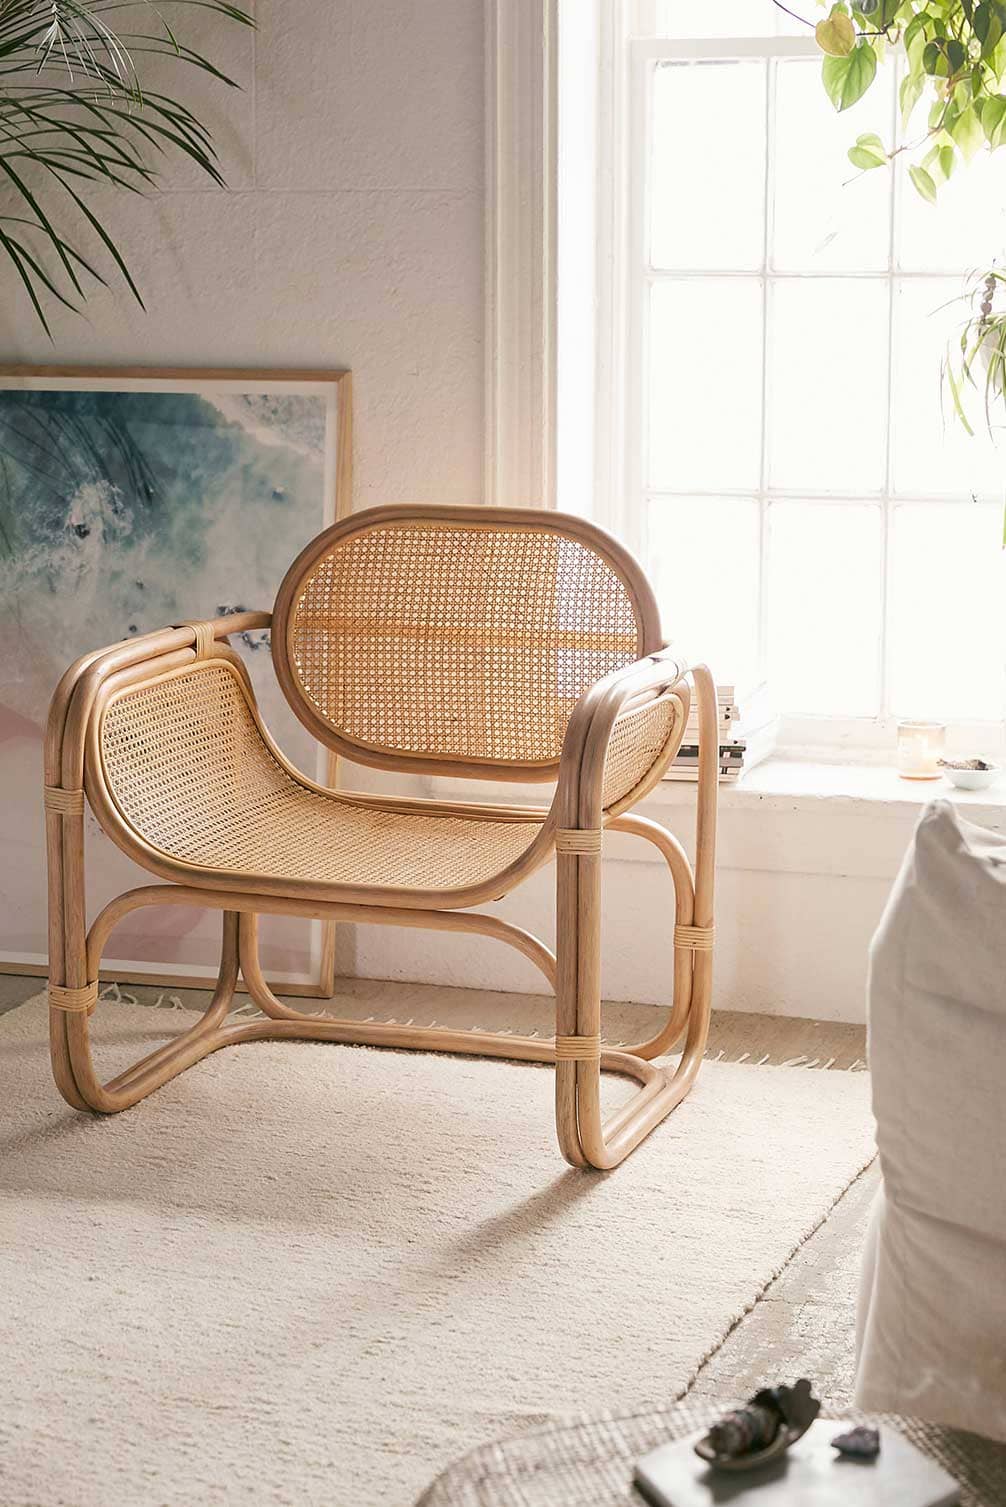 Idée de fauteuil arrondi en cannage et bambou - Decorazine.fr